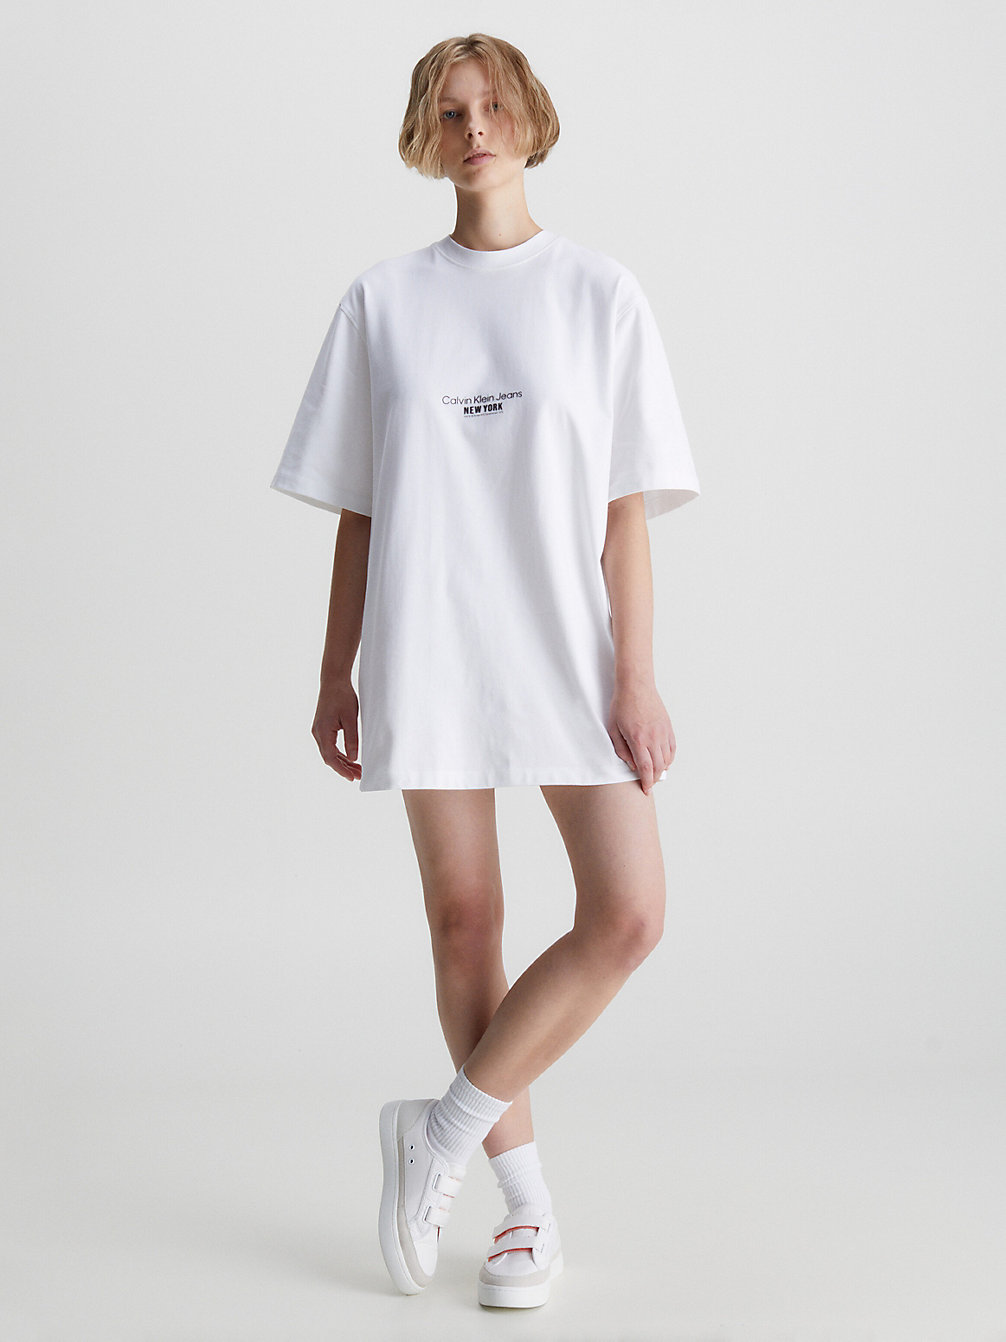 BRIGHT WHITE > Sukienka Typu T-Shirt Z Haftem > undefined Kobiety - Calvin Klein